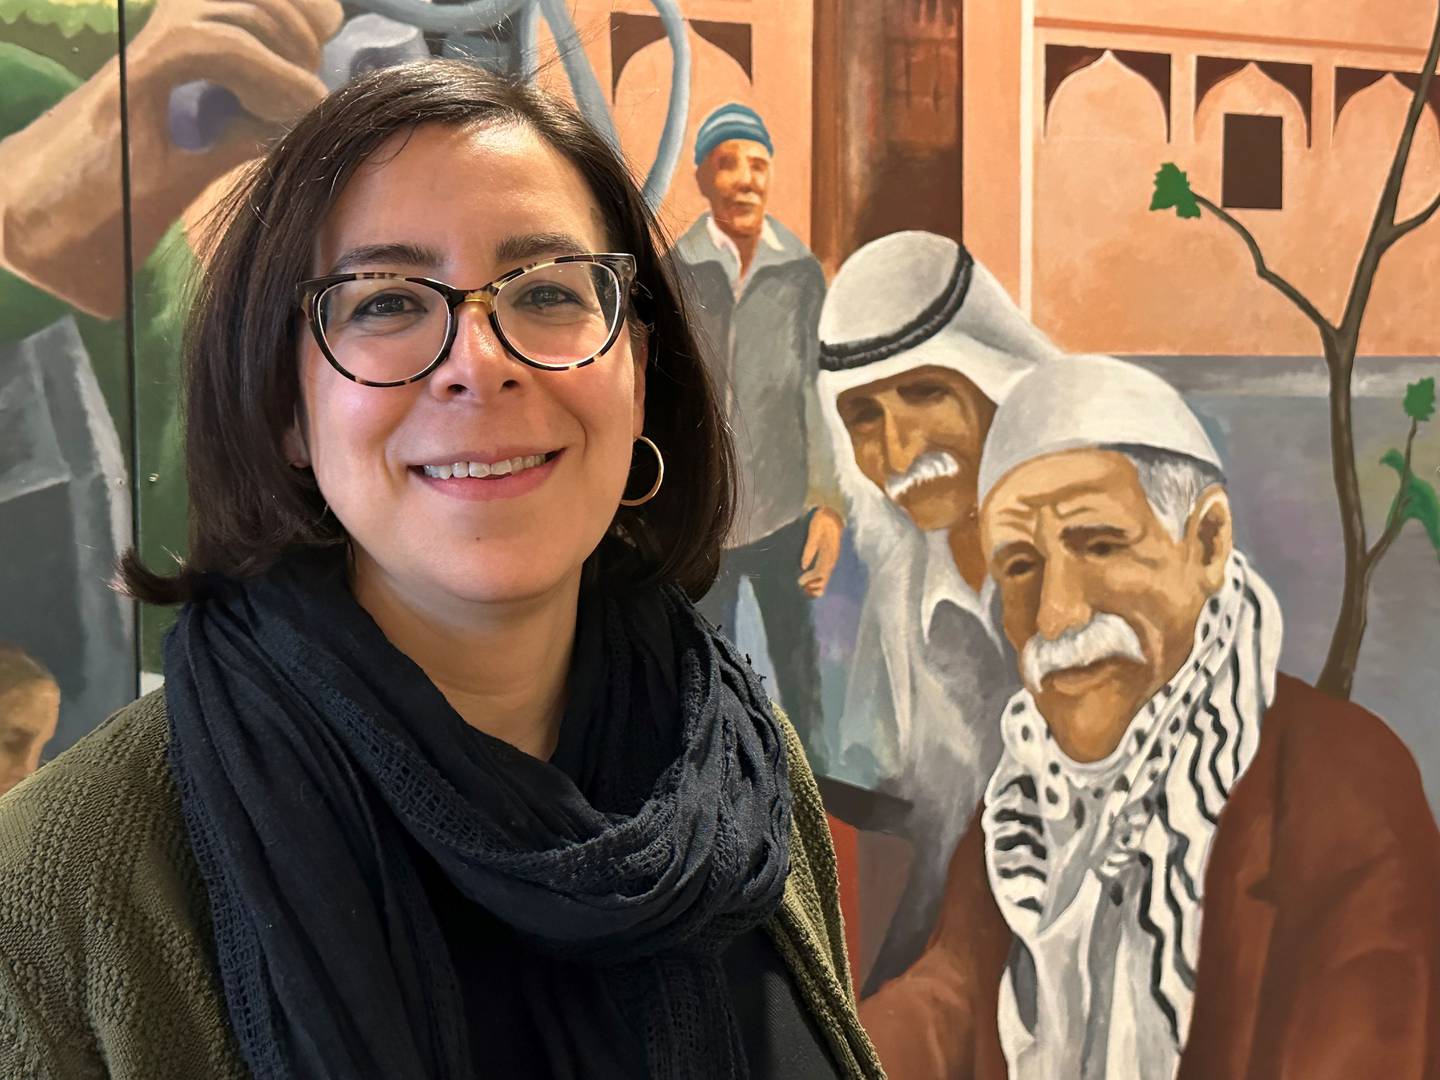 Rima Meroueh leder et nettverk av arabiske lokalsamfunn i hele USA. Hun opplever stor frustrasjon med det amerikanske demokratiet og valgsystemet - men samtidig en stor interesse for å stemme og bli hørt. Dearborn-reportasje.